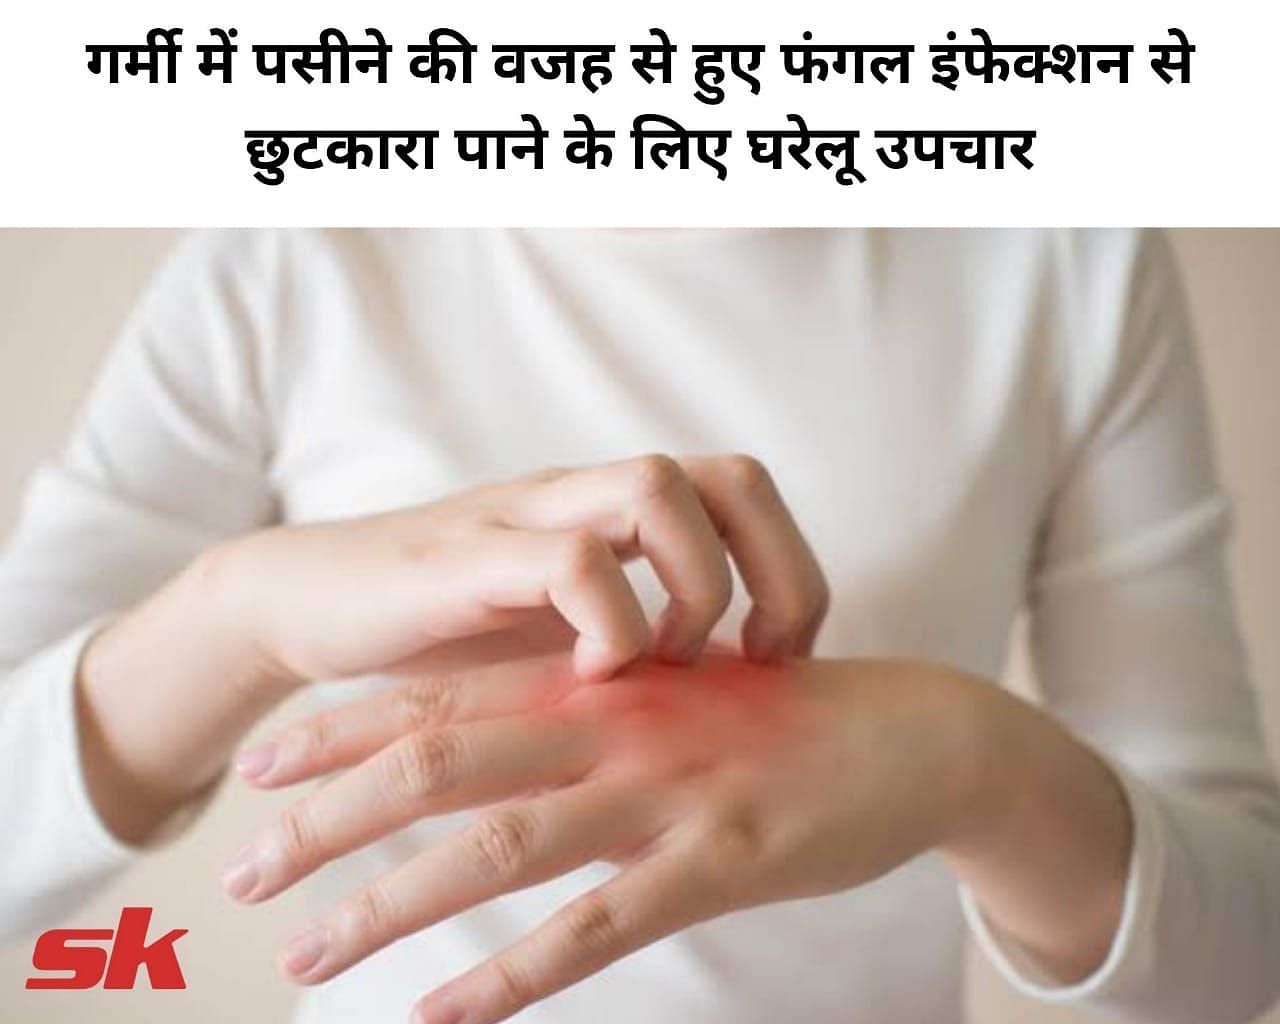 गर्मी में पसीने की वजह से हुए फंगल इंफेक्शन से छुटकारा पाने के लिए घरेलू उपचार (फोटो - sportskeeda hindi)